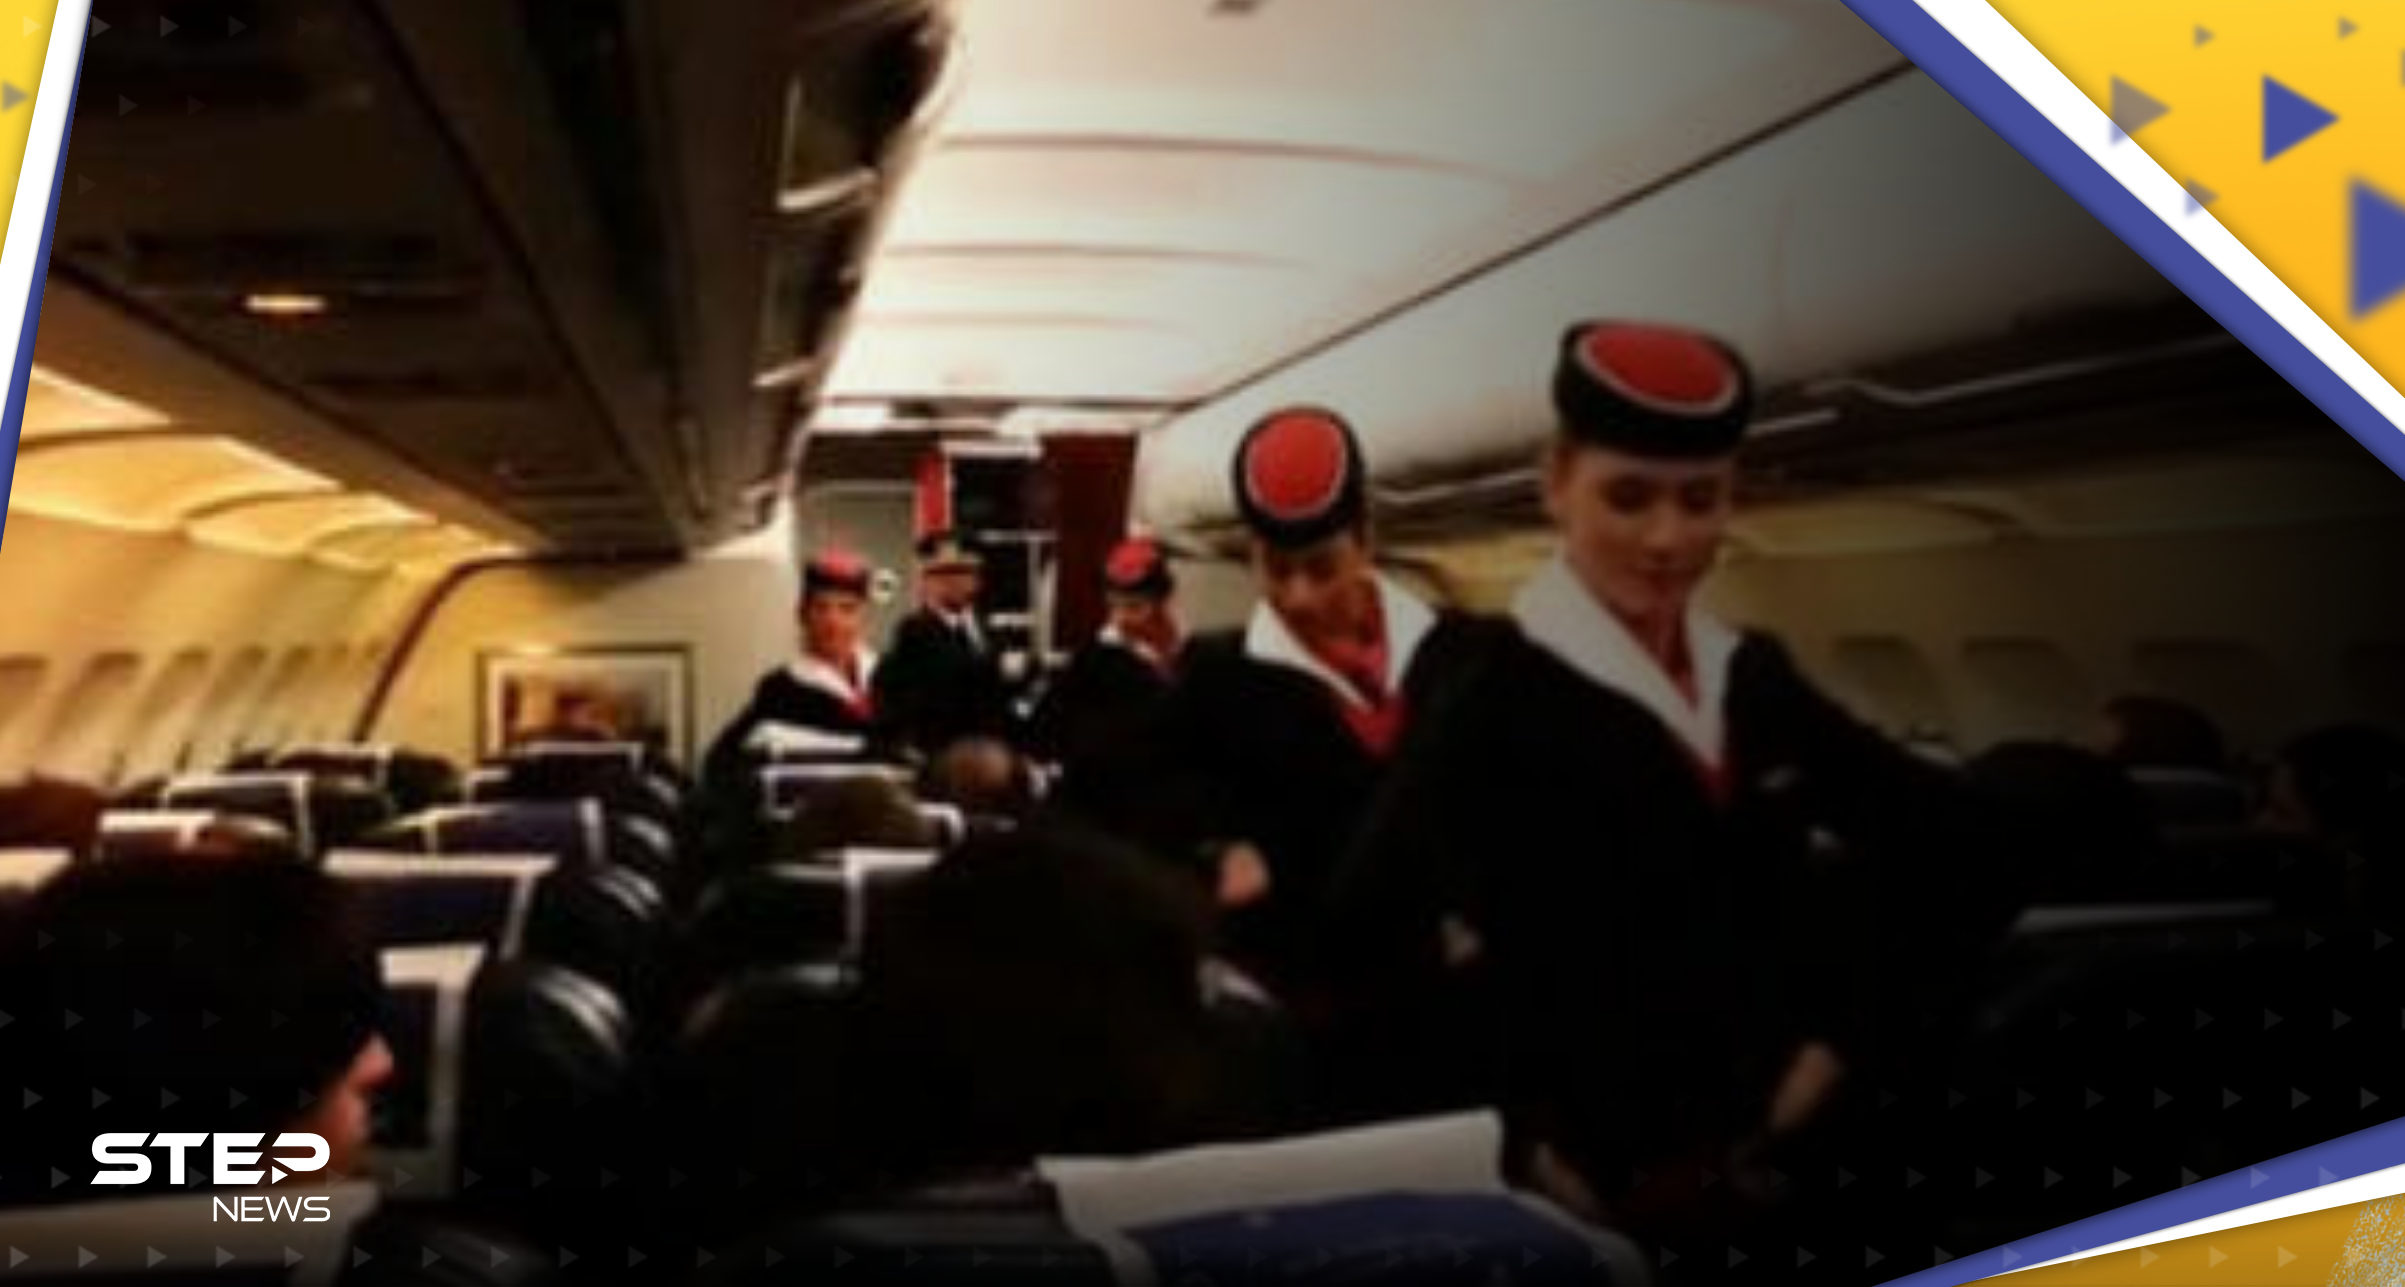 "فضيحة" تطال سعد الحريري بعد اتهامه بـ"اعتداء جنسي" على مضيفتي طيران